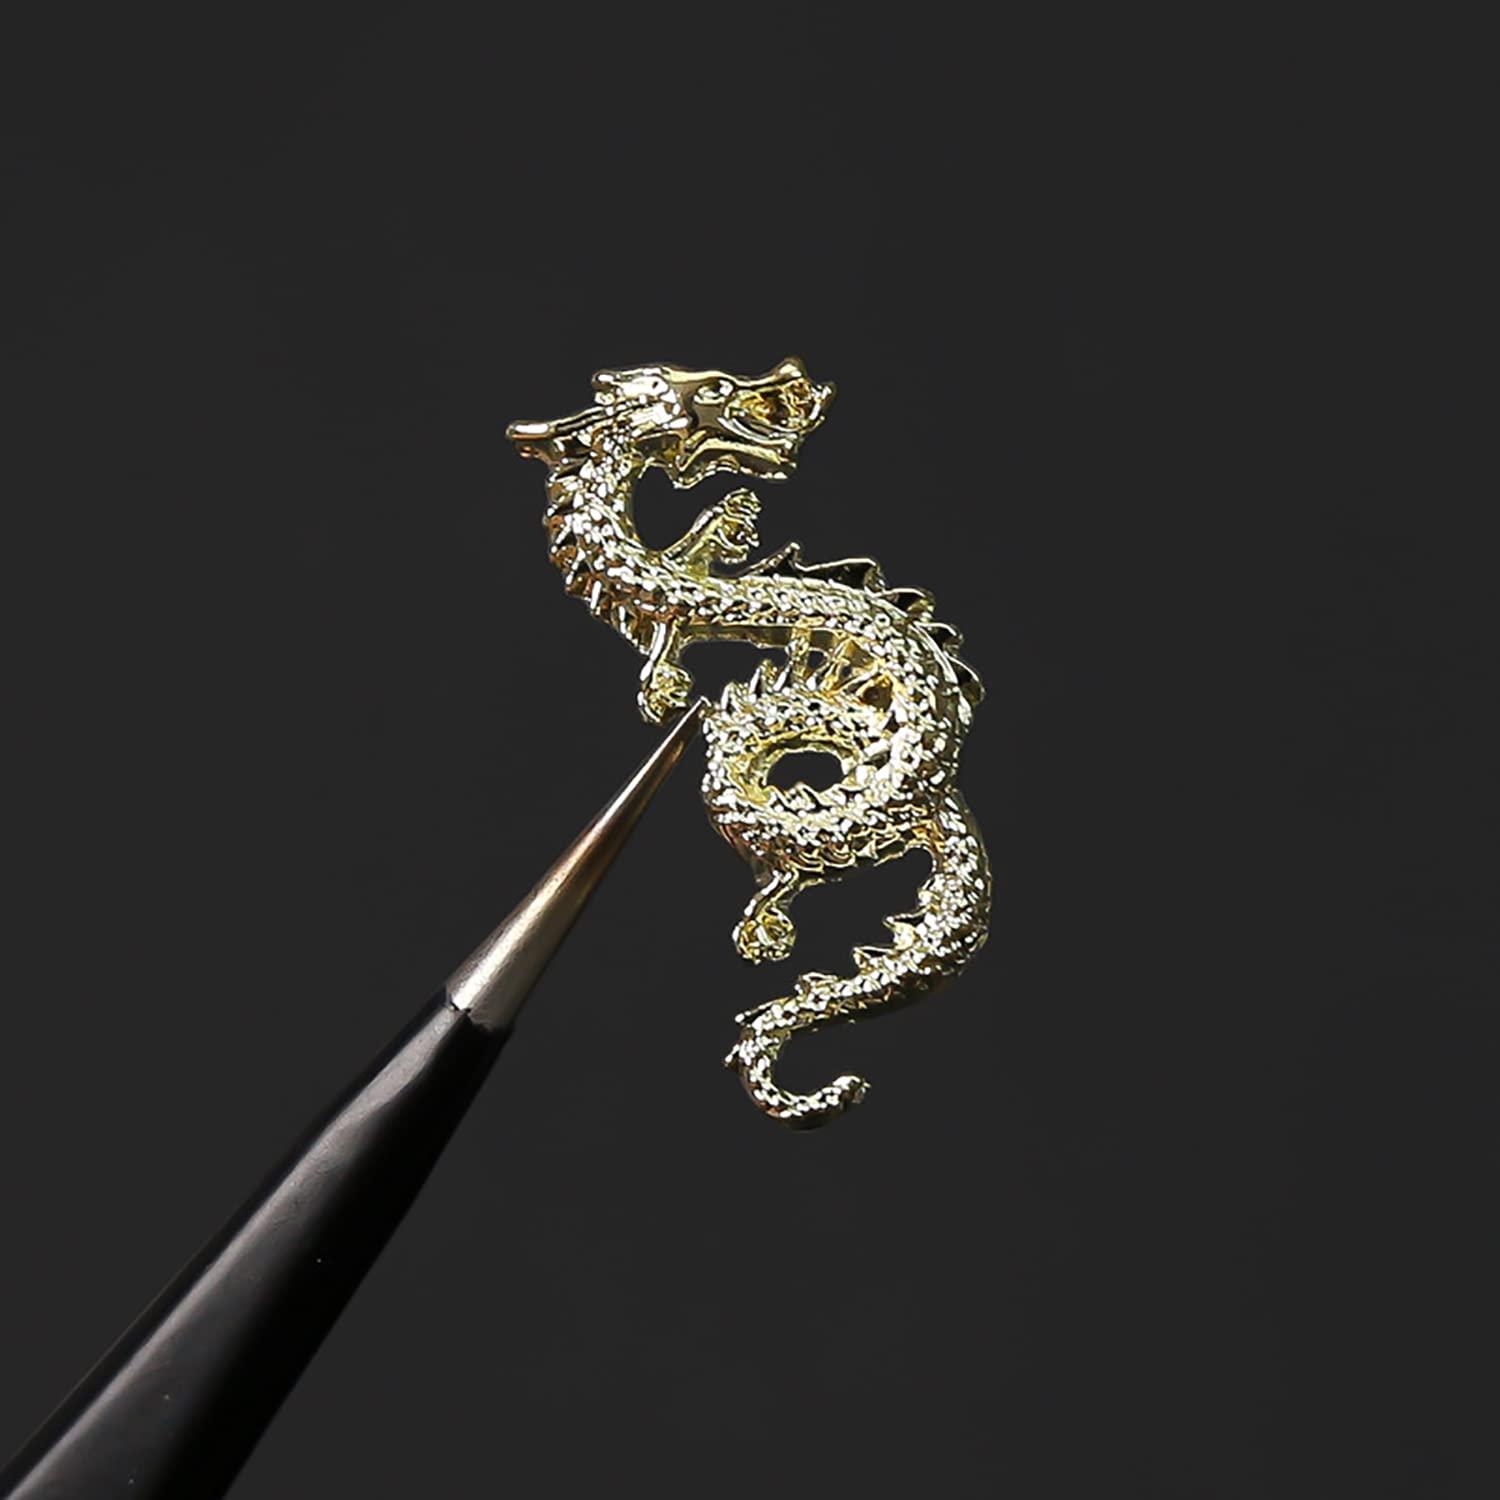 WOKOTO 20pcs Gold and Silver Chinese Dragon Nail Charms for Long Nails  Dragon Jewelrys 3D Nail Jewelry for Acrylic Nails Art 3D Dragon Charms  Silver Nail Studs Charms for Nails Designs Charms